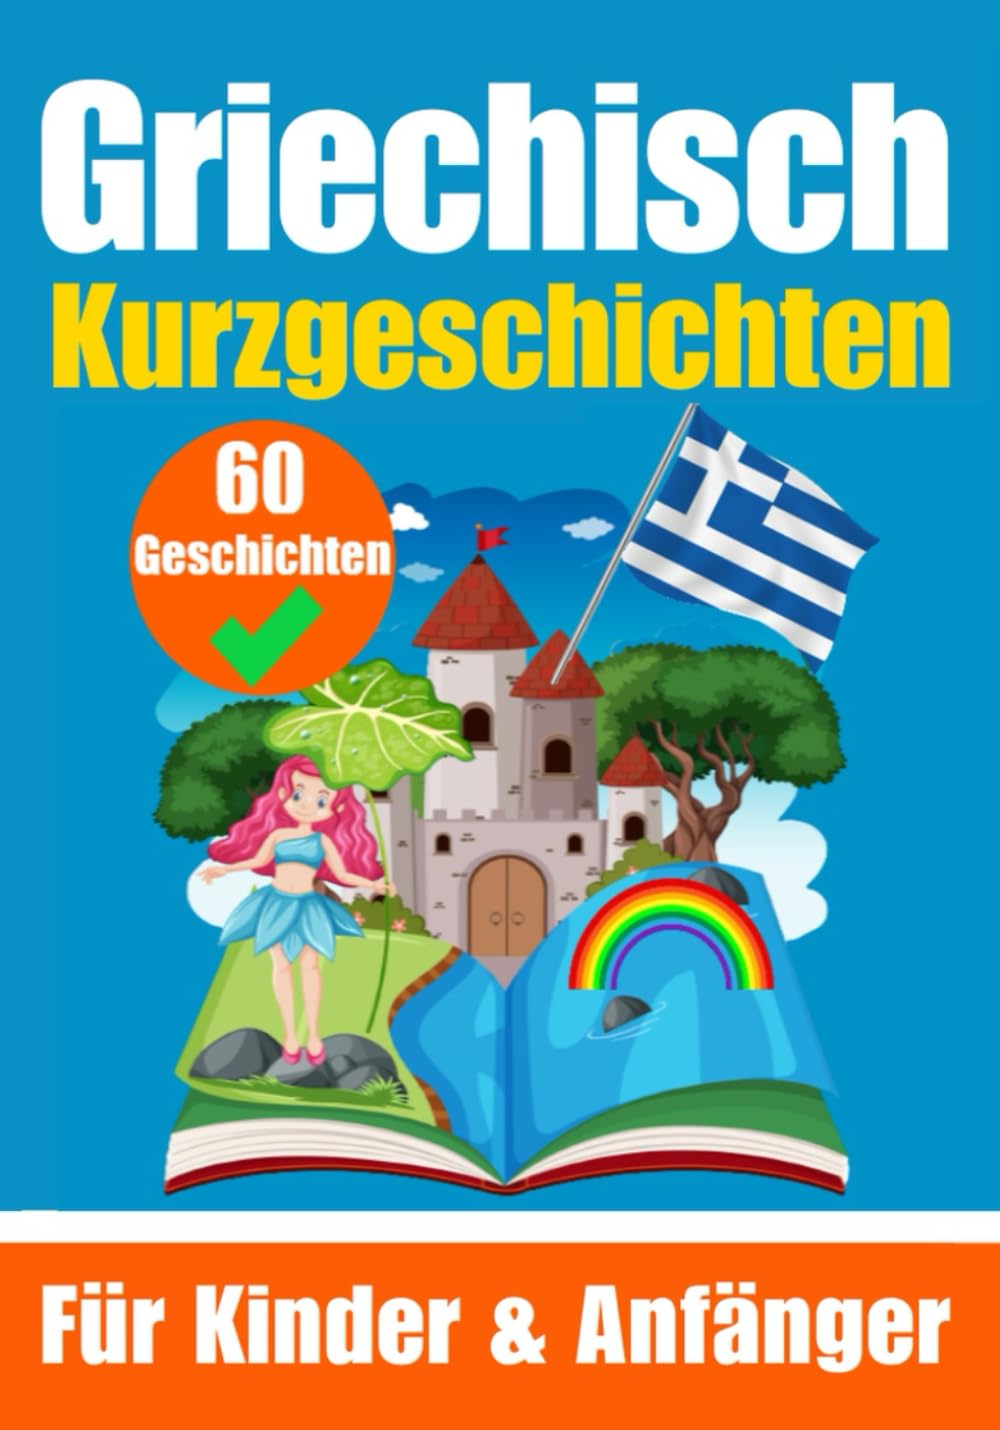 60 Kurzgeschichten auf Griechisch | Für Kinder und Anfänger